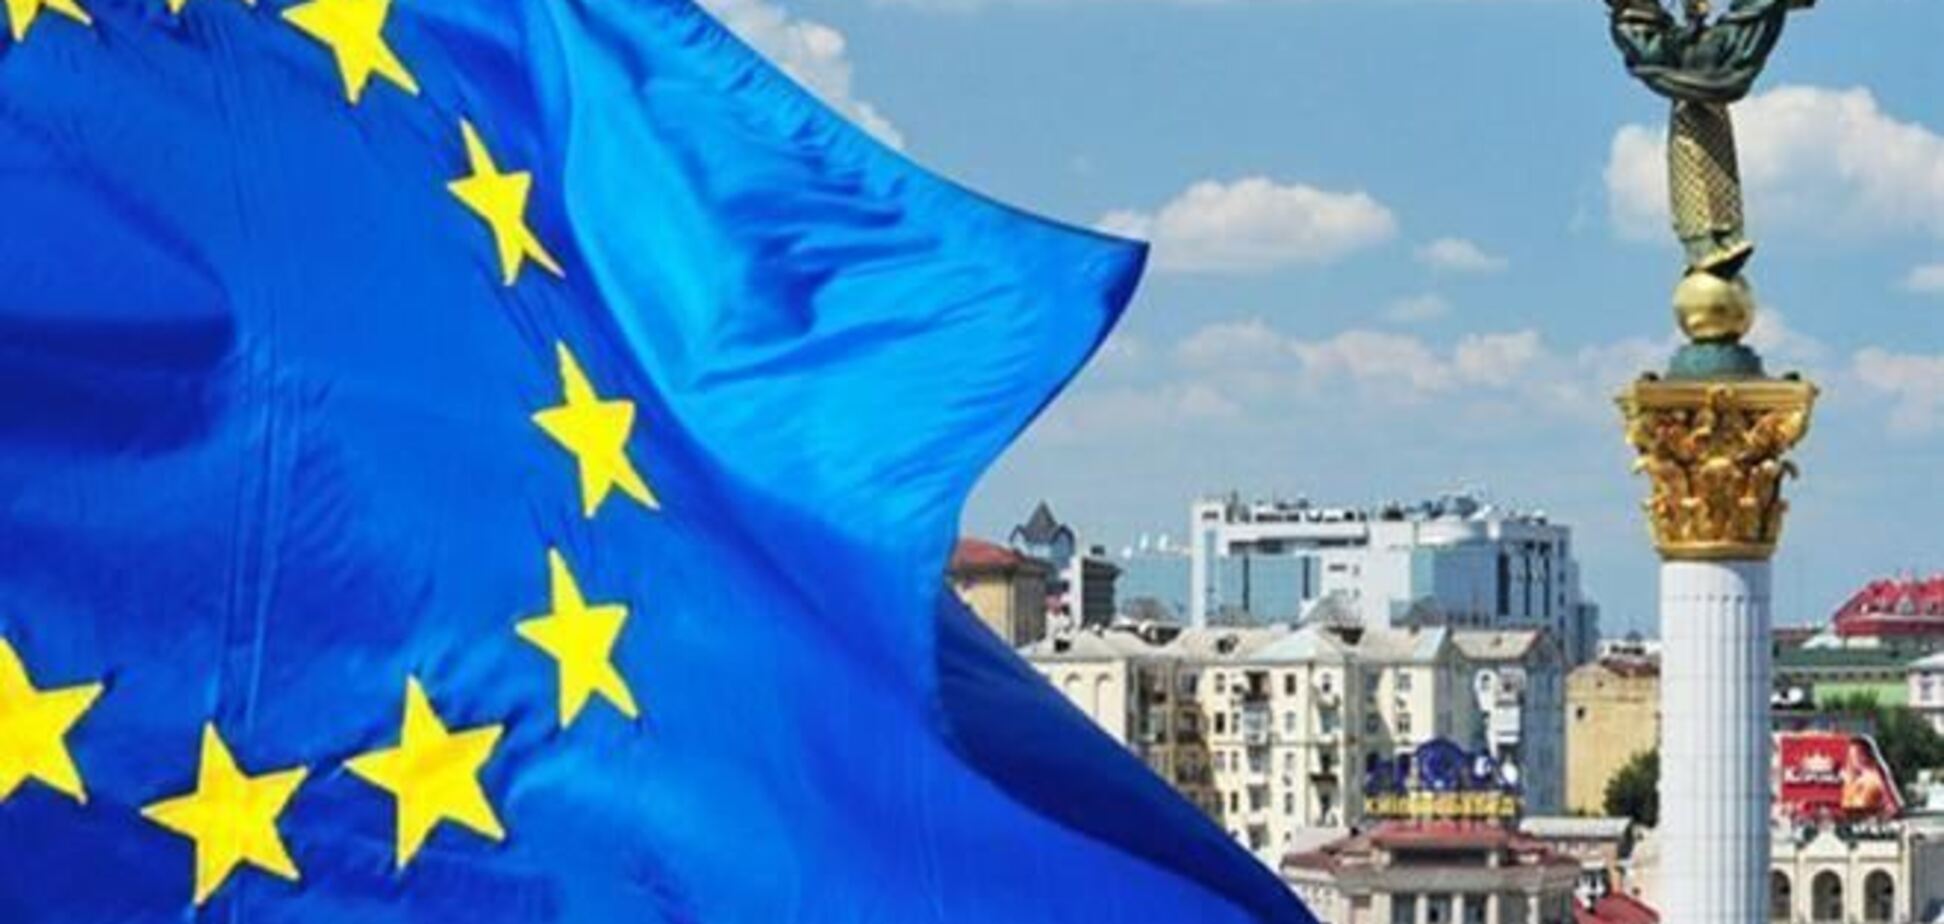 ЄС застосував санкції до українських чиновників, винним в насильстві - нардеп